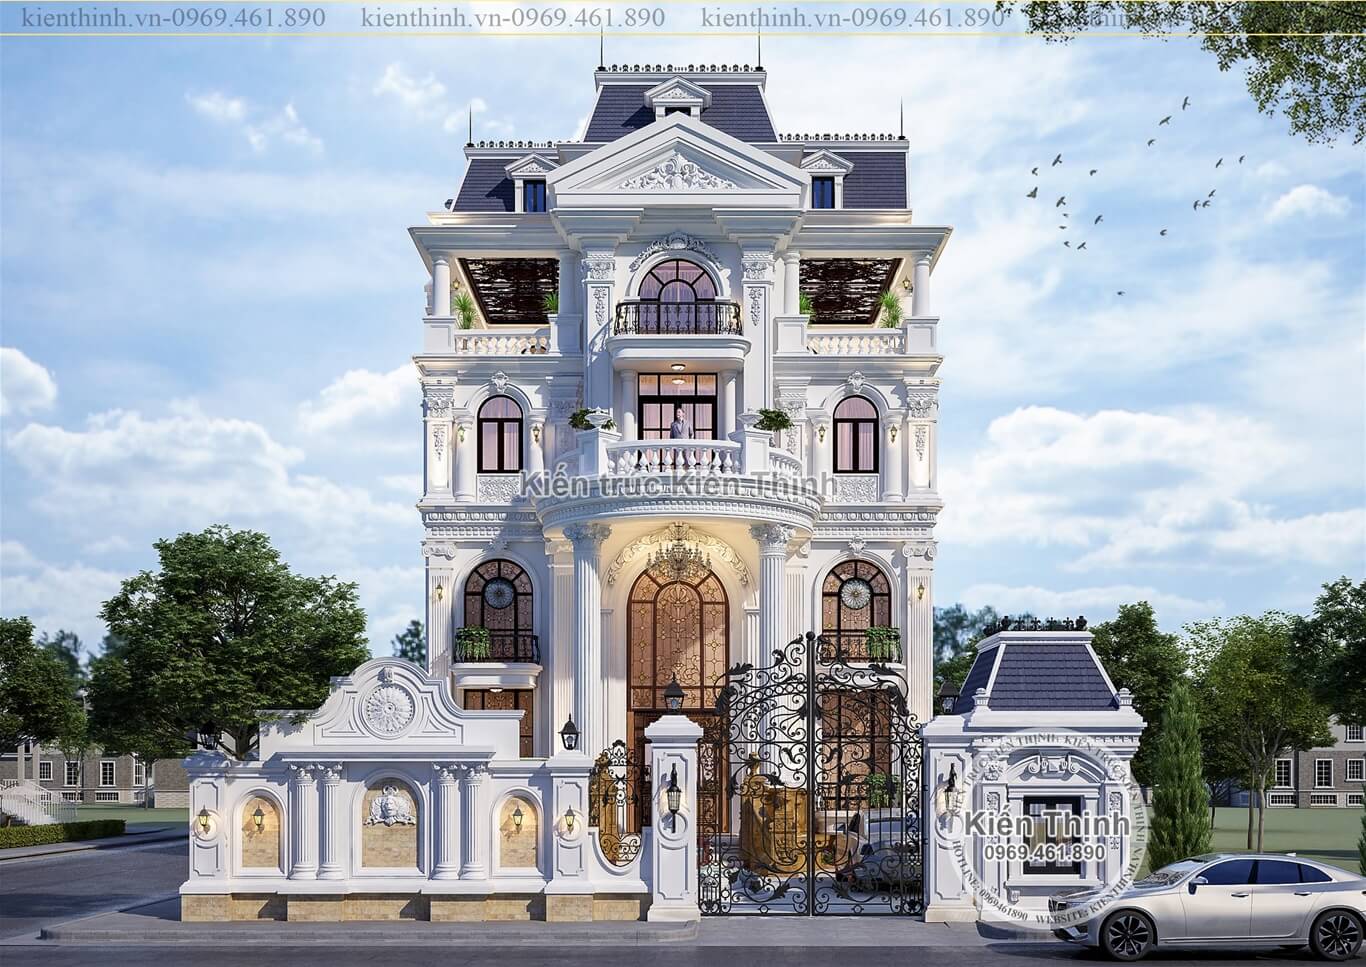 Thiết kế mẫu biệt thự tân cổ điển - kiểu Pháp 4 tầng đẹp lộng lẫy tại Long Biên - Hà Nội BT1973